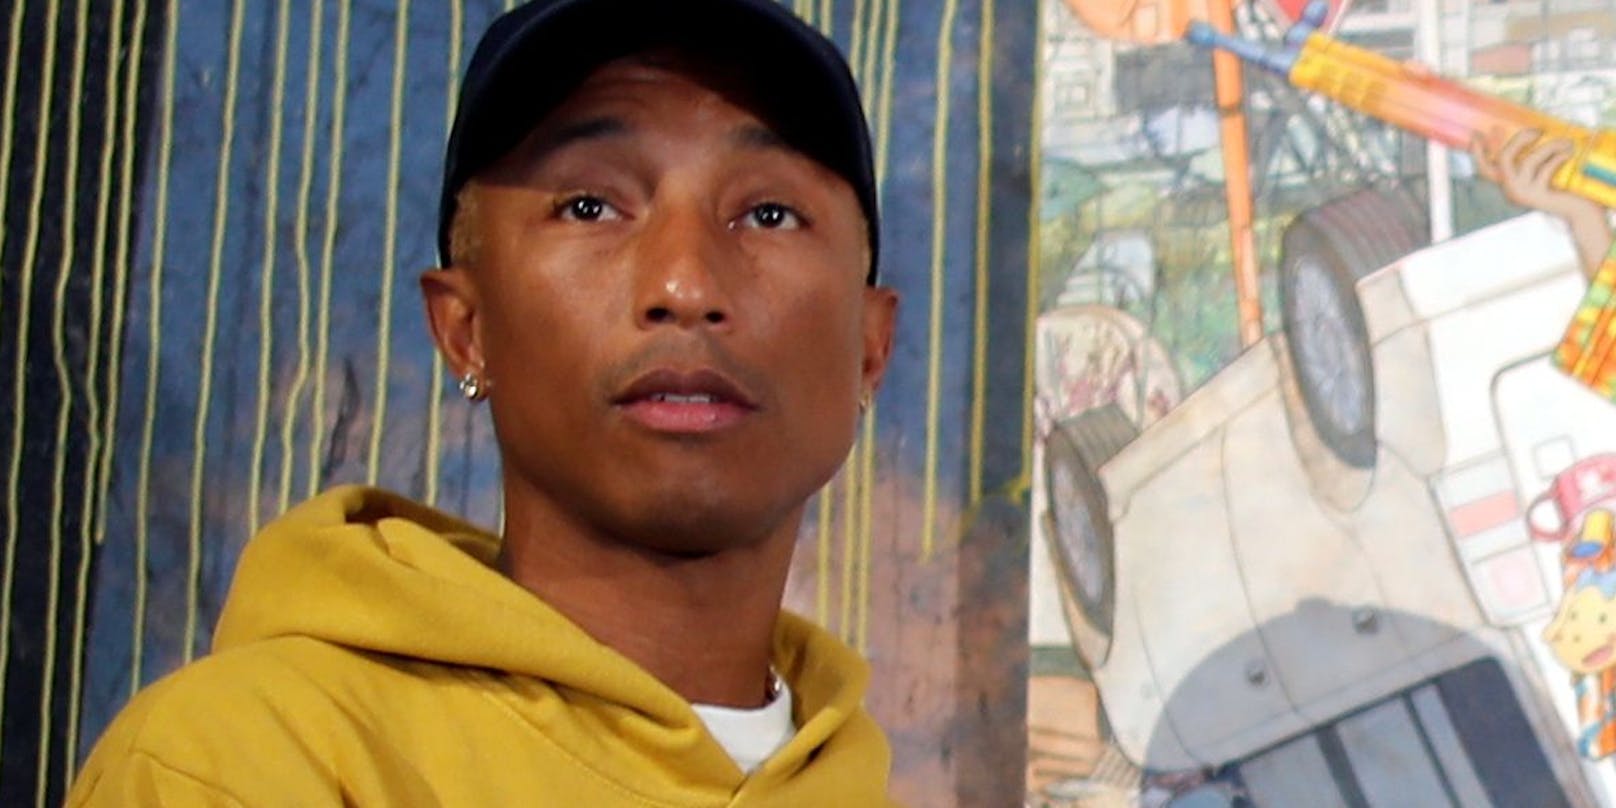 Der Cousin von Pharrell Williams (Bild) wurde erschossen.